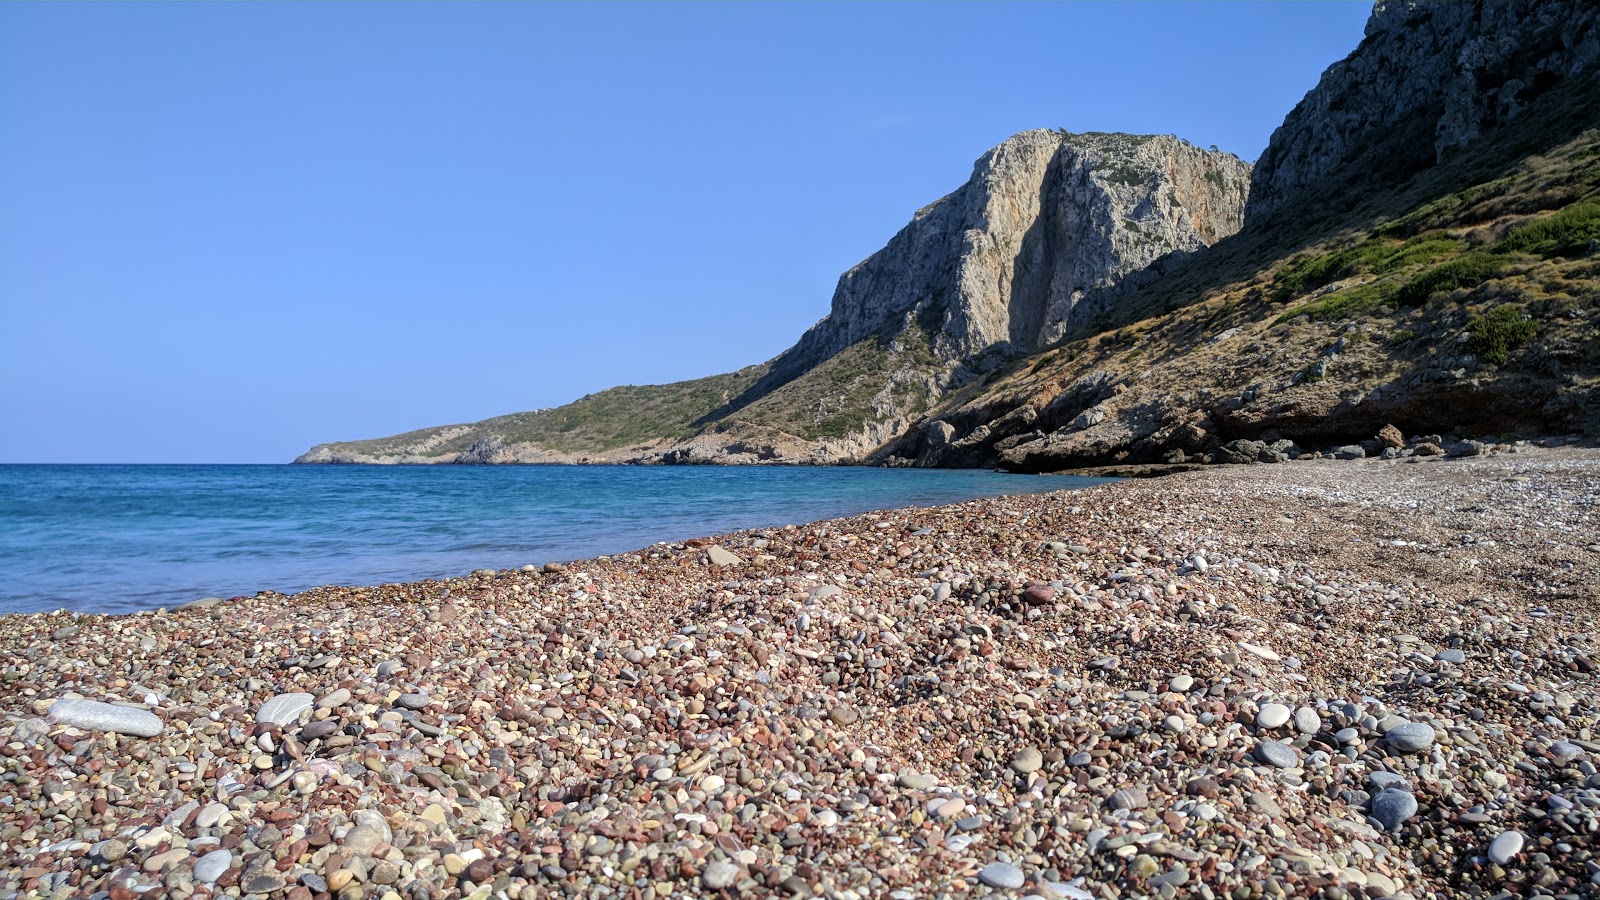 Kaki Lagkada'in fotoğrafı geniş plaj ile birlikte